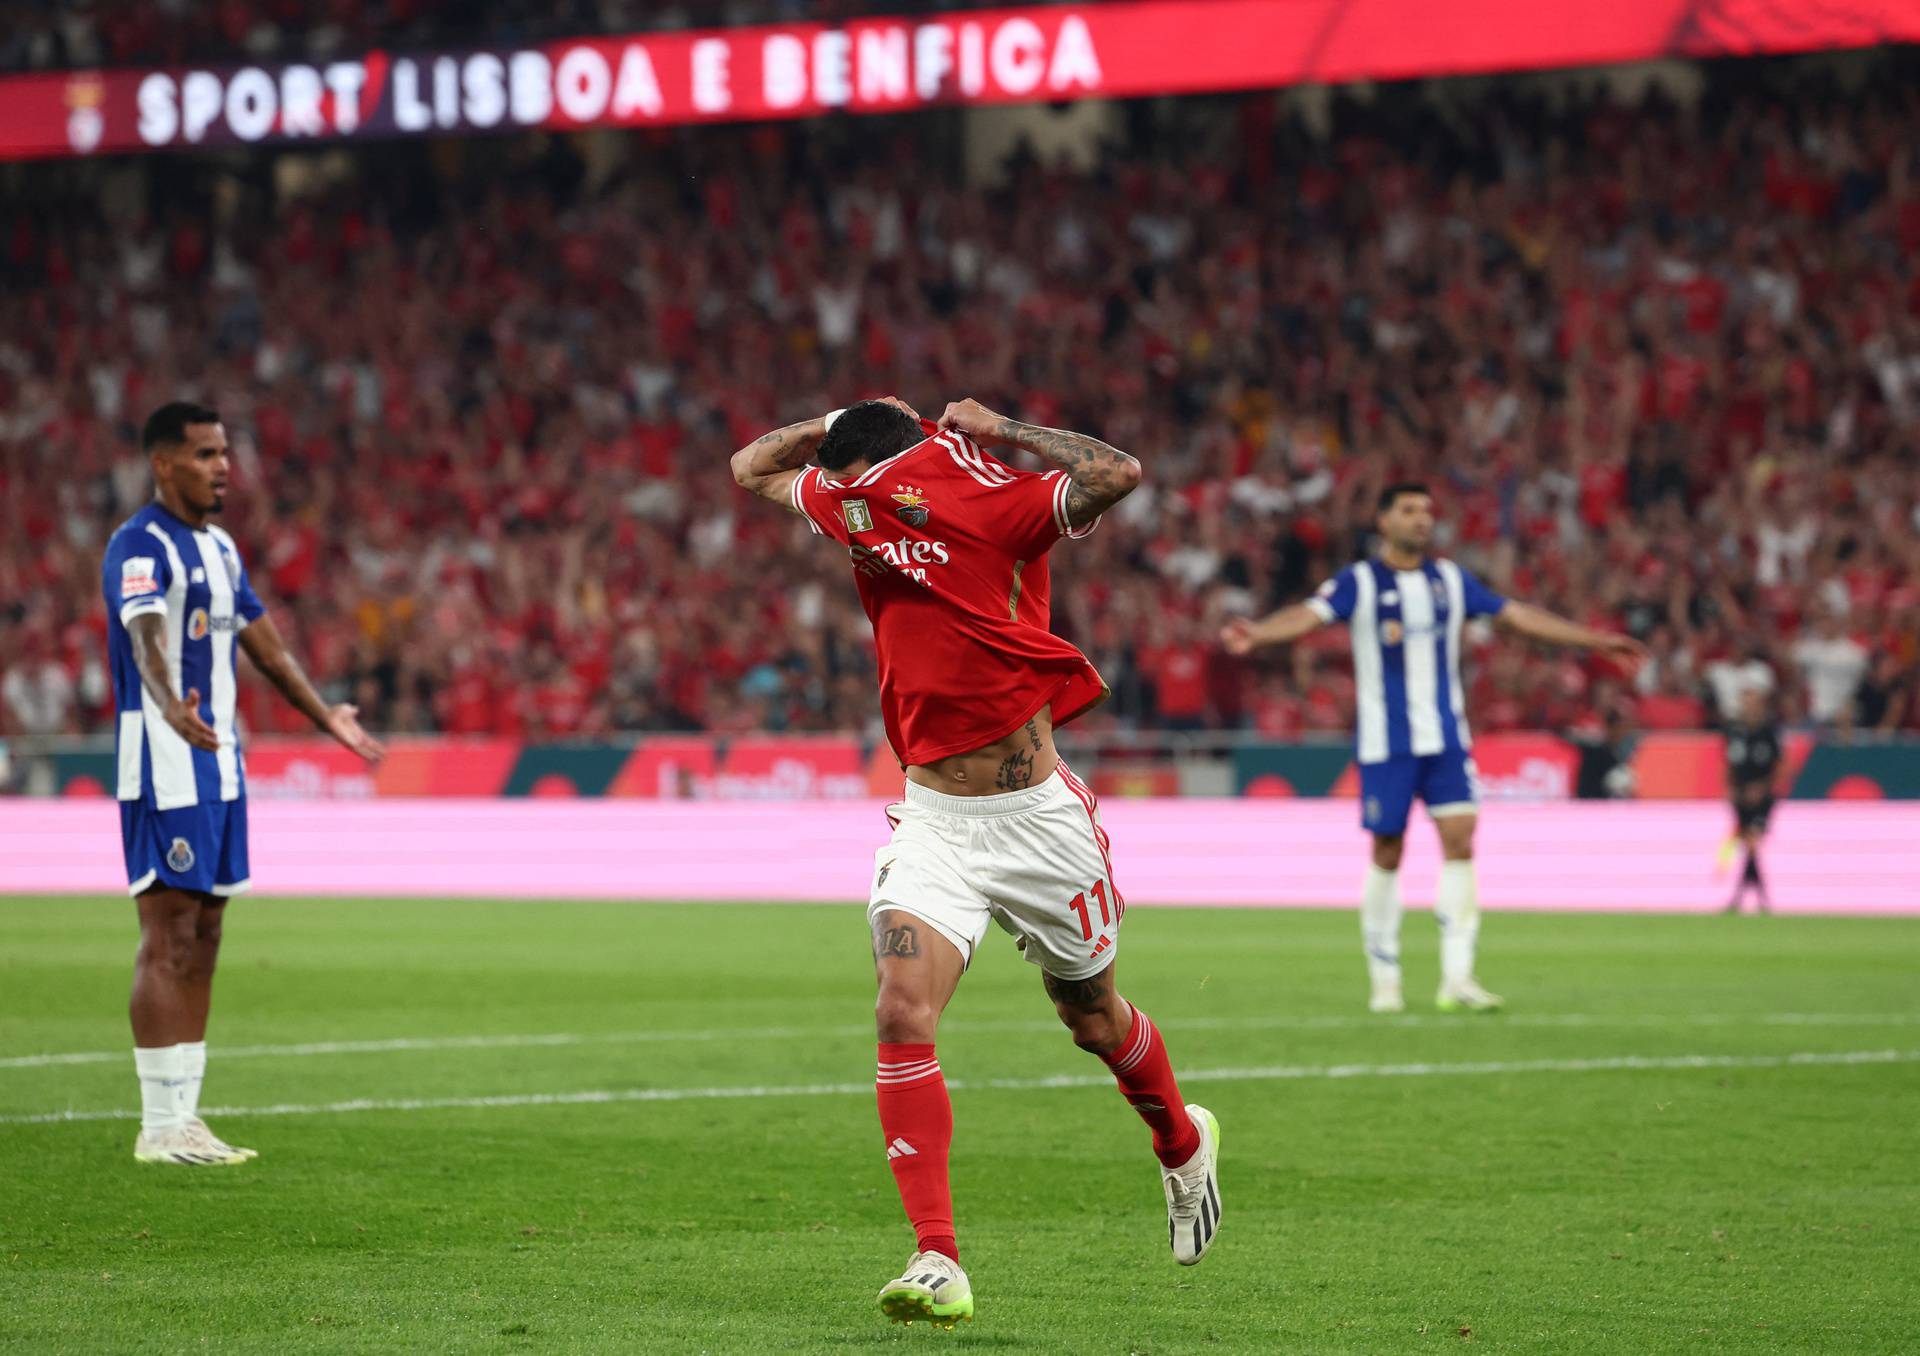 Primeira Liga - Benfica v FC Porto